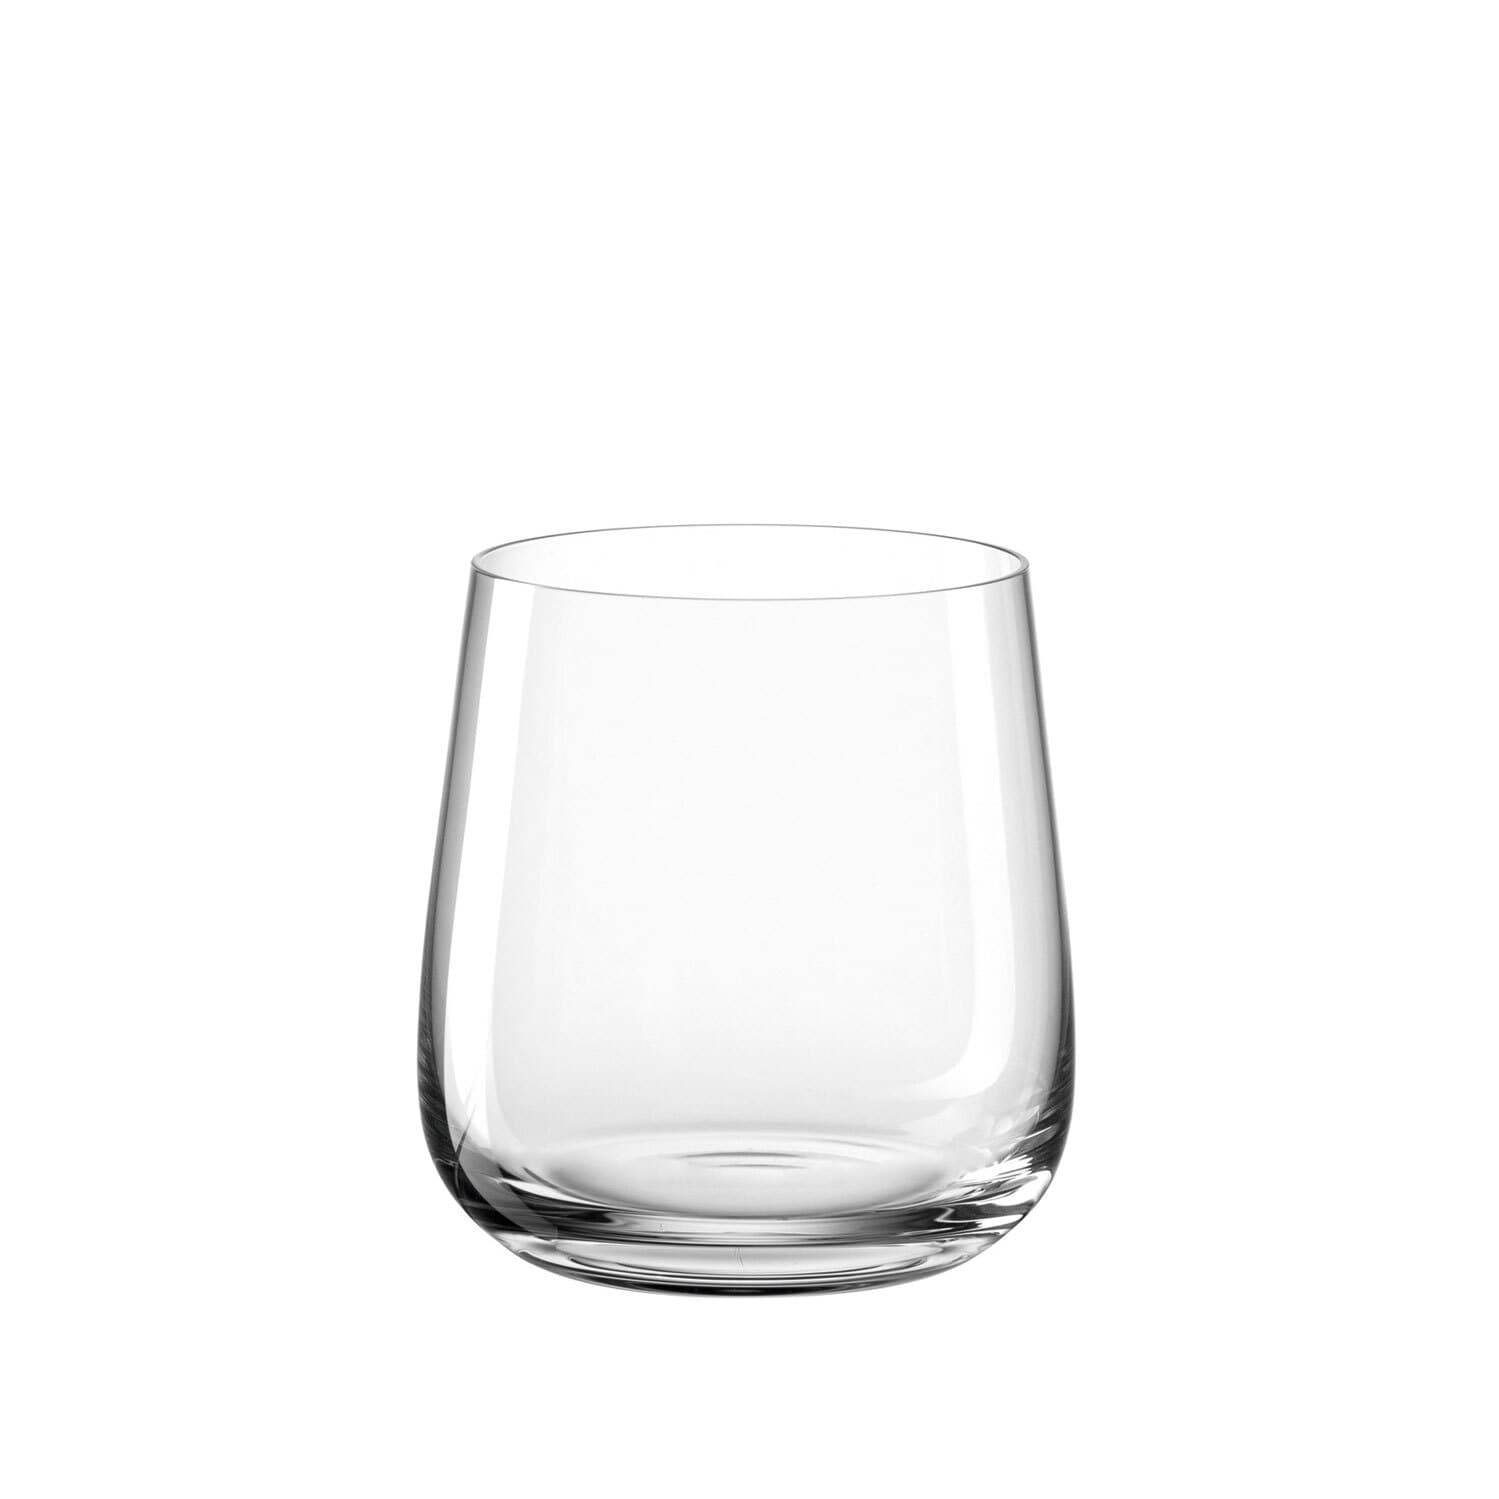 LEONARDO Whiskyglas BRUNELLI 6er Set